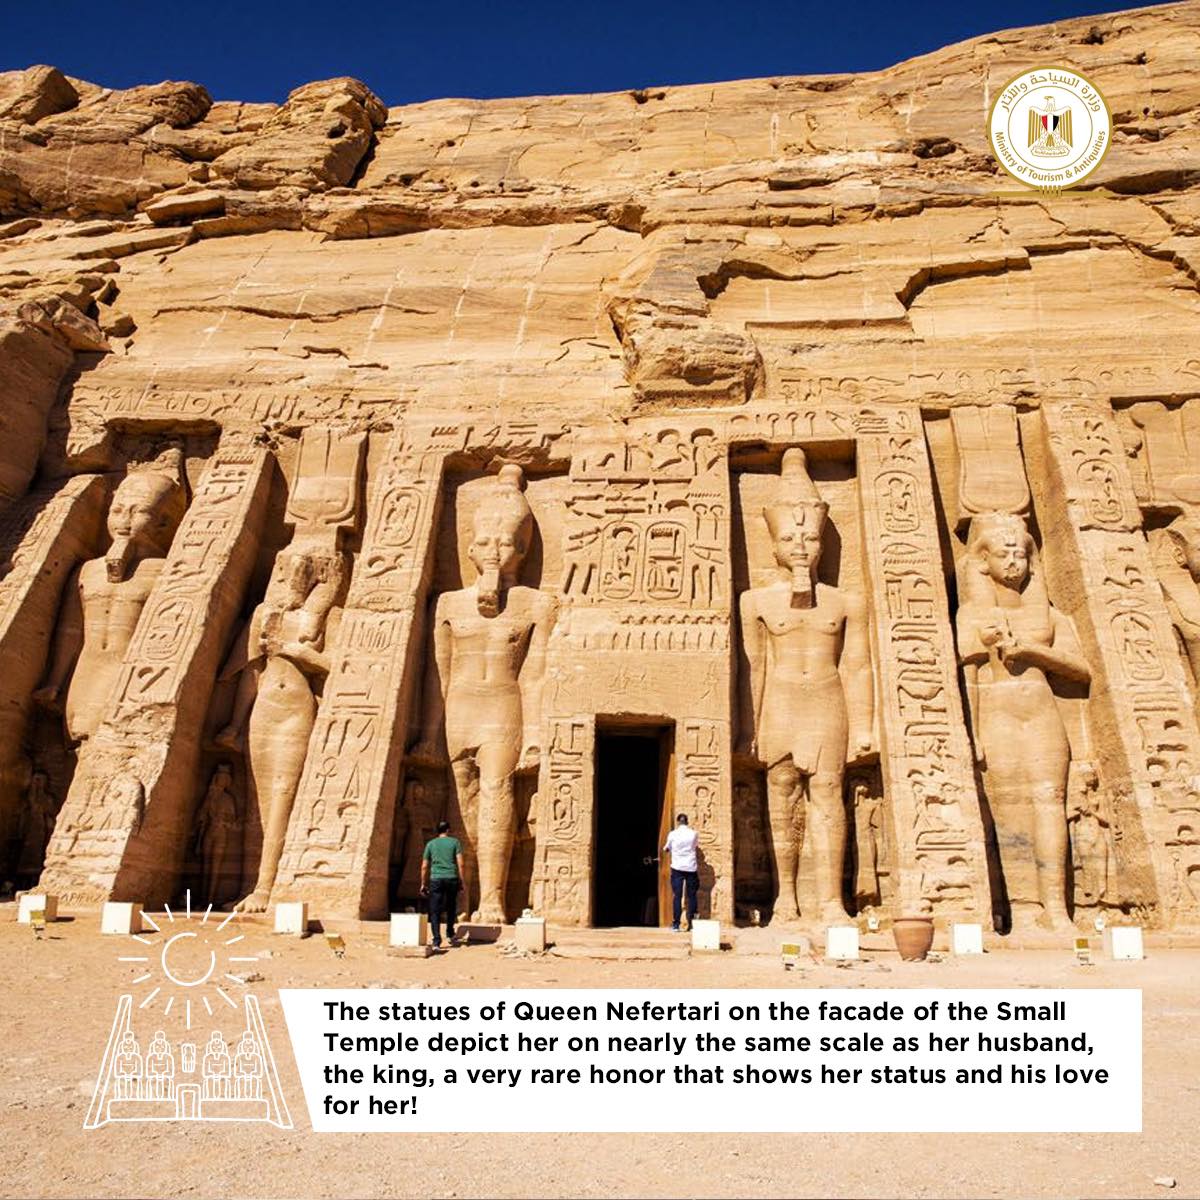 Abu Simbel Temples - Min. of Tourism & Antiquities